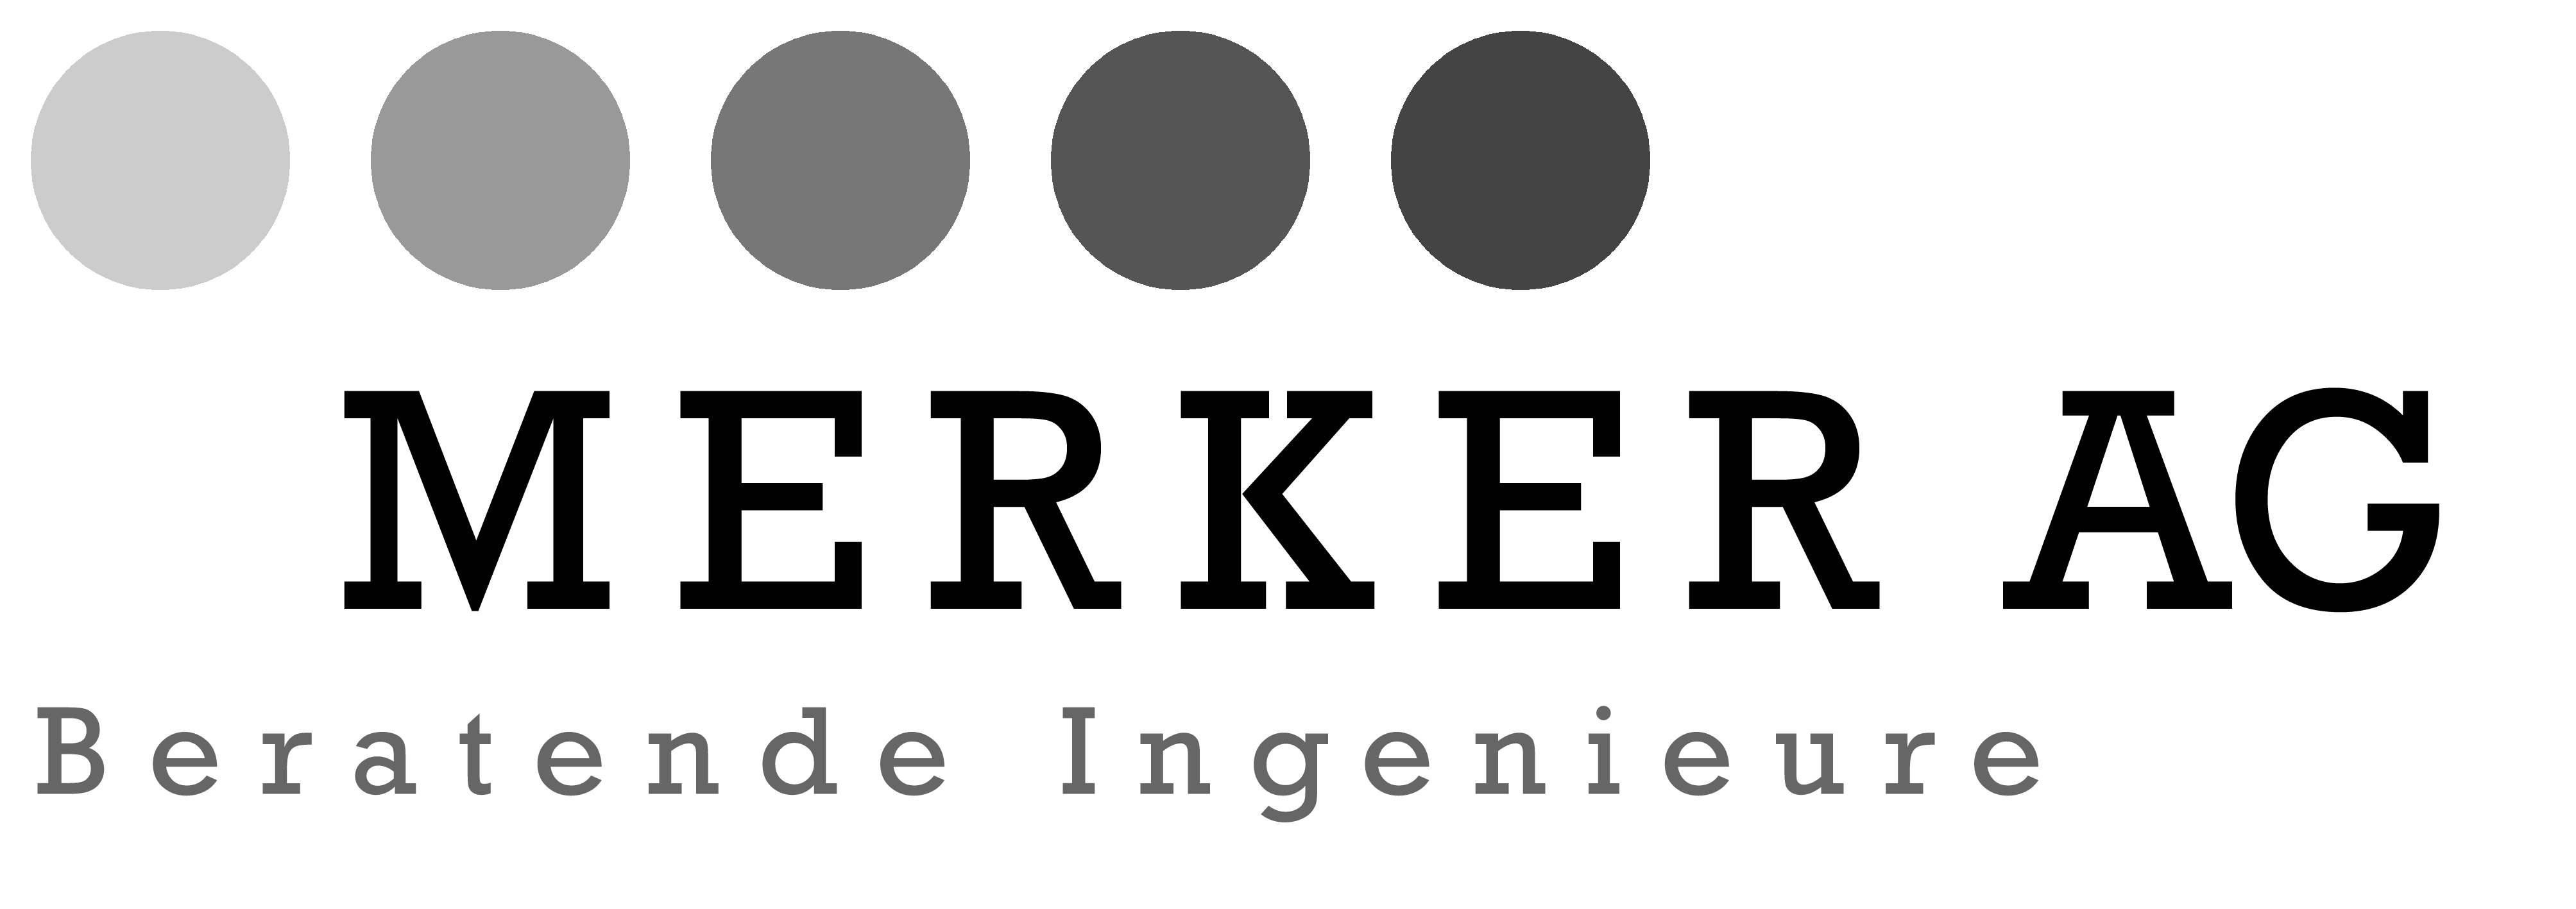 Merker-Logo